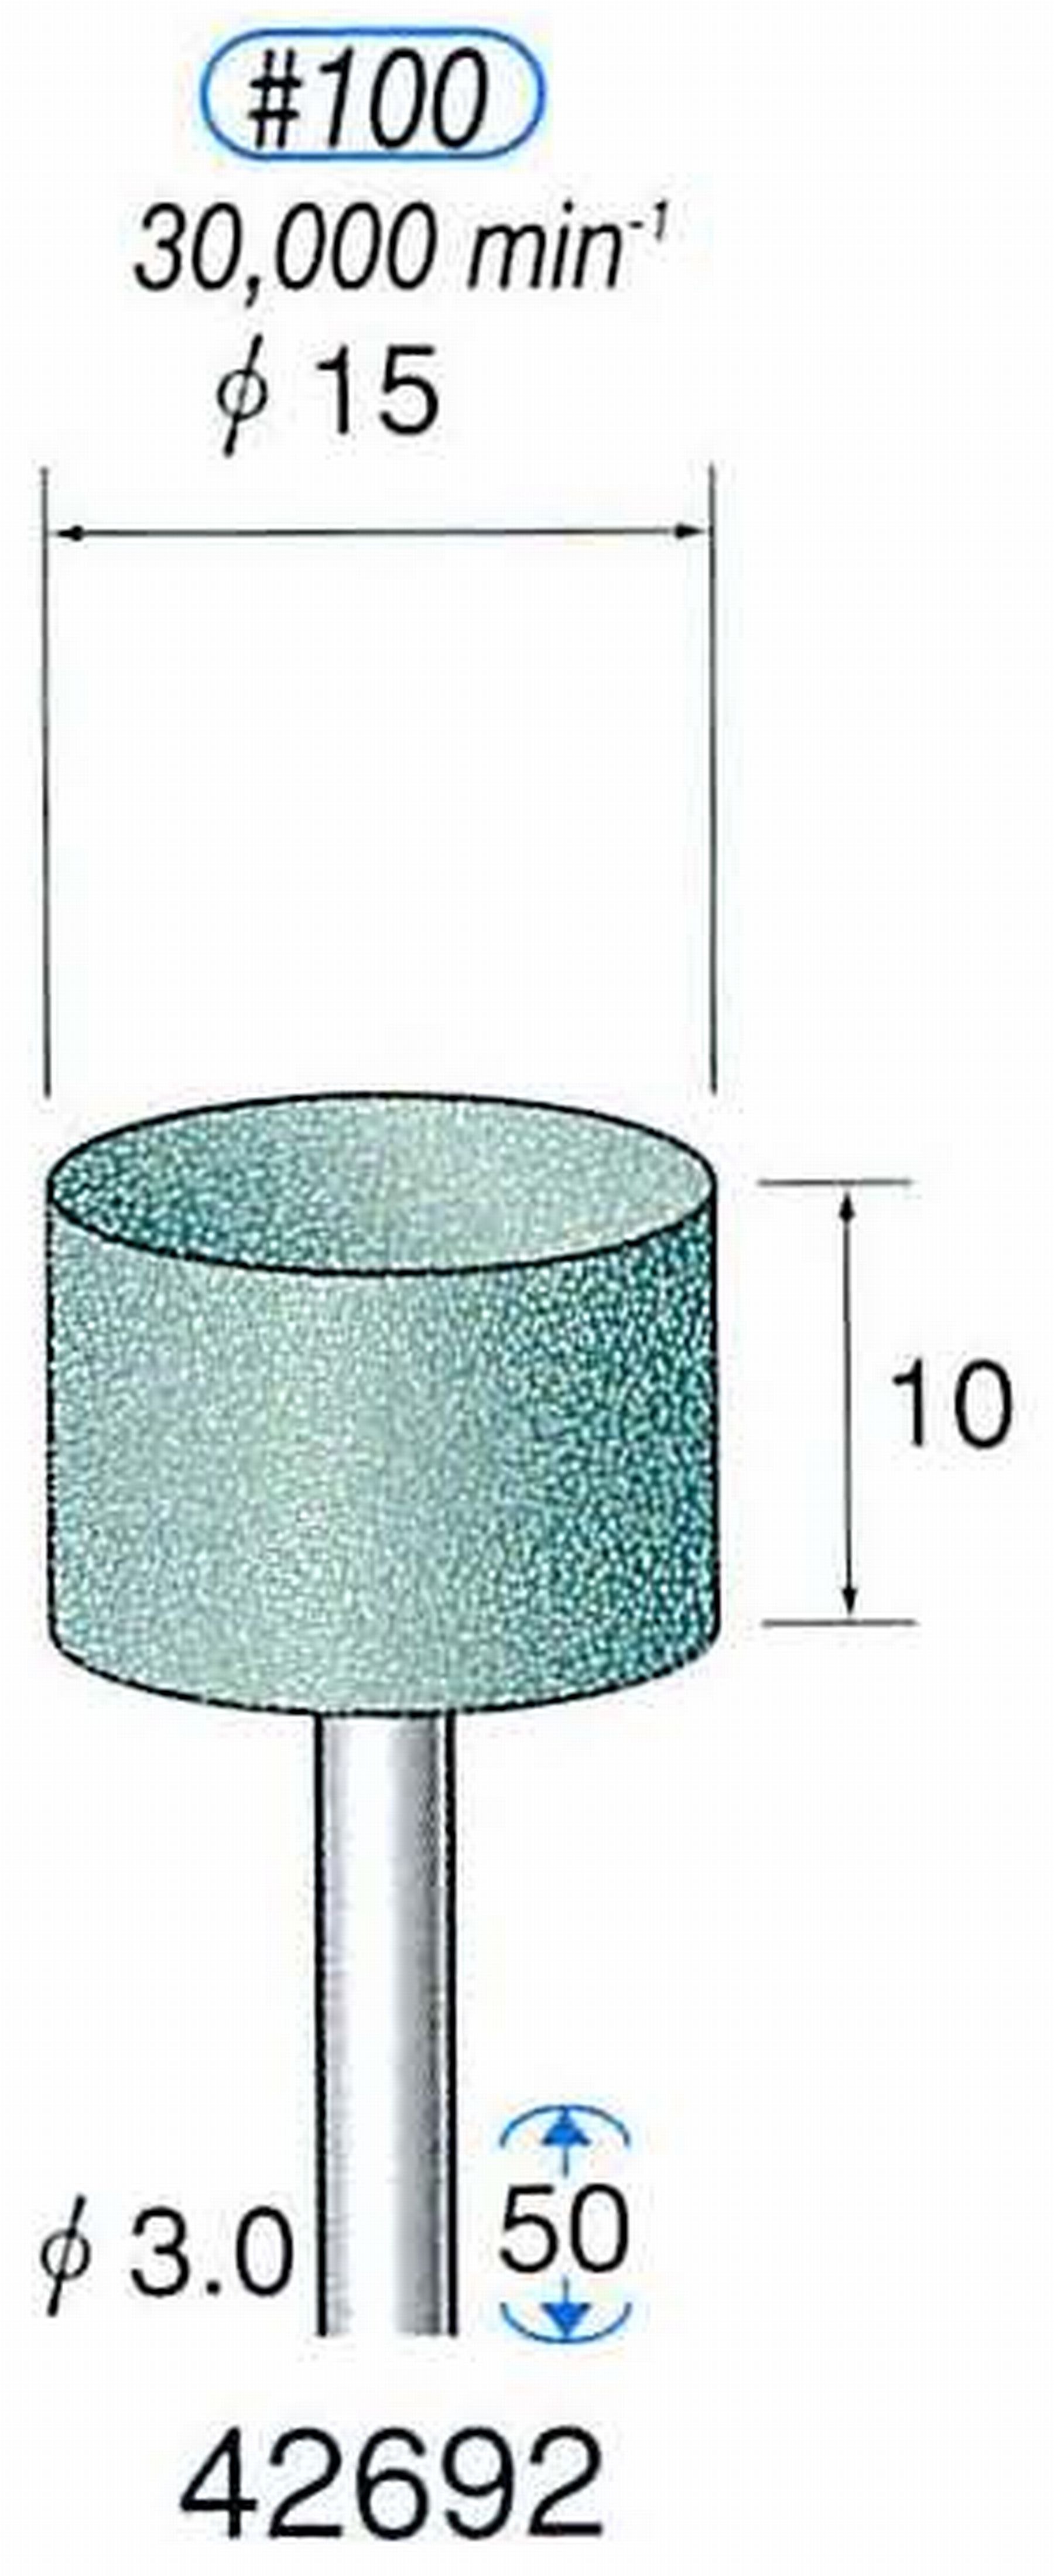 ナカニシ/NAKANISHI 軸付砥石(GC砥粒) グリーン砥石 軸径(シャンク) φ3.0mm 42692